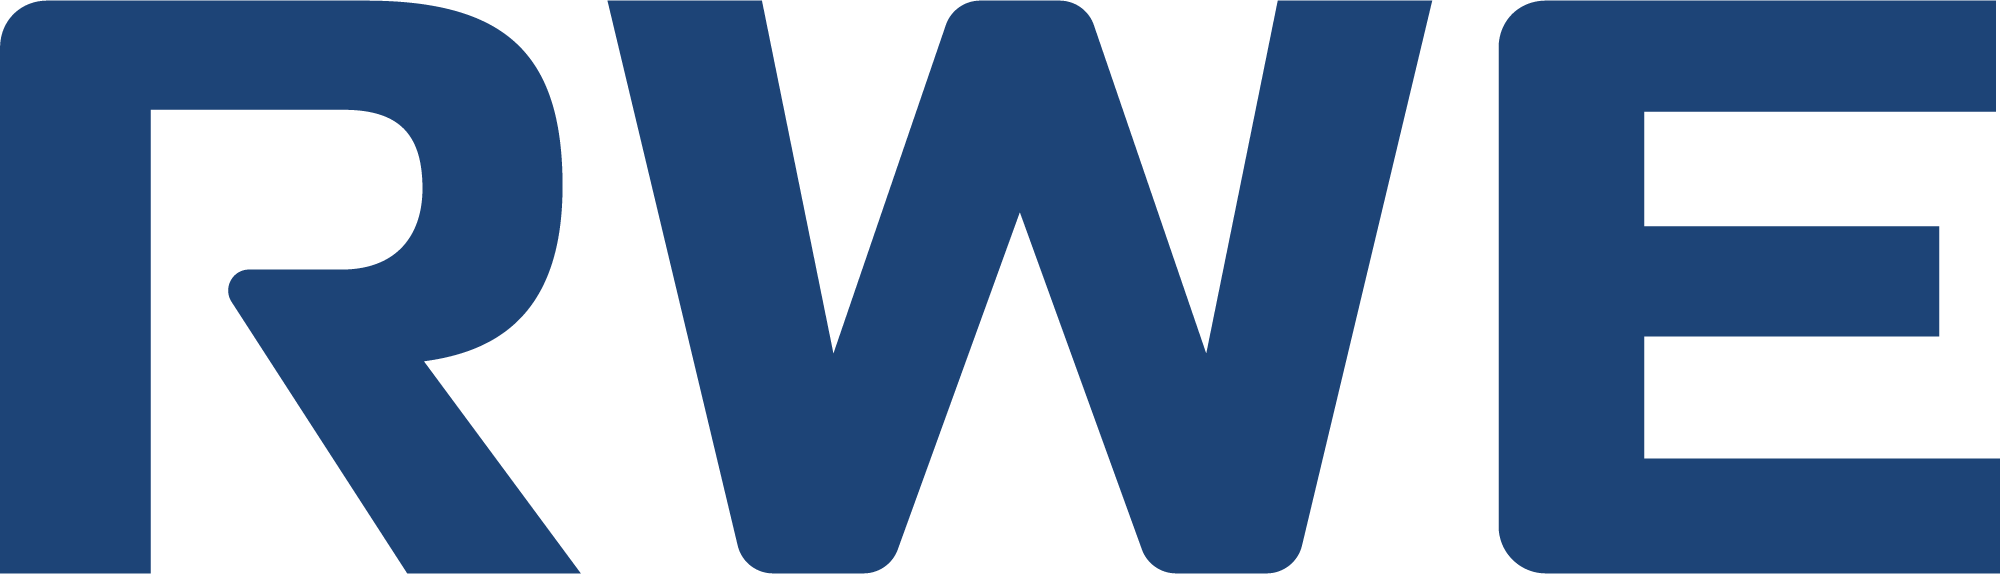 RWE Logo 2019 Blue sRGB Copy